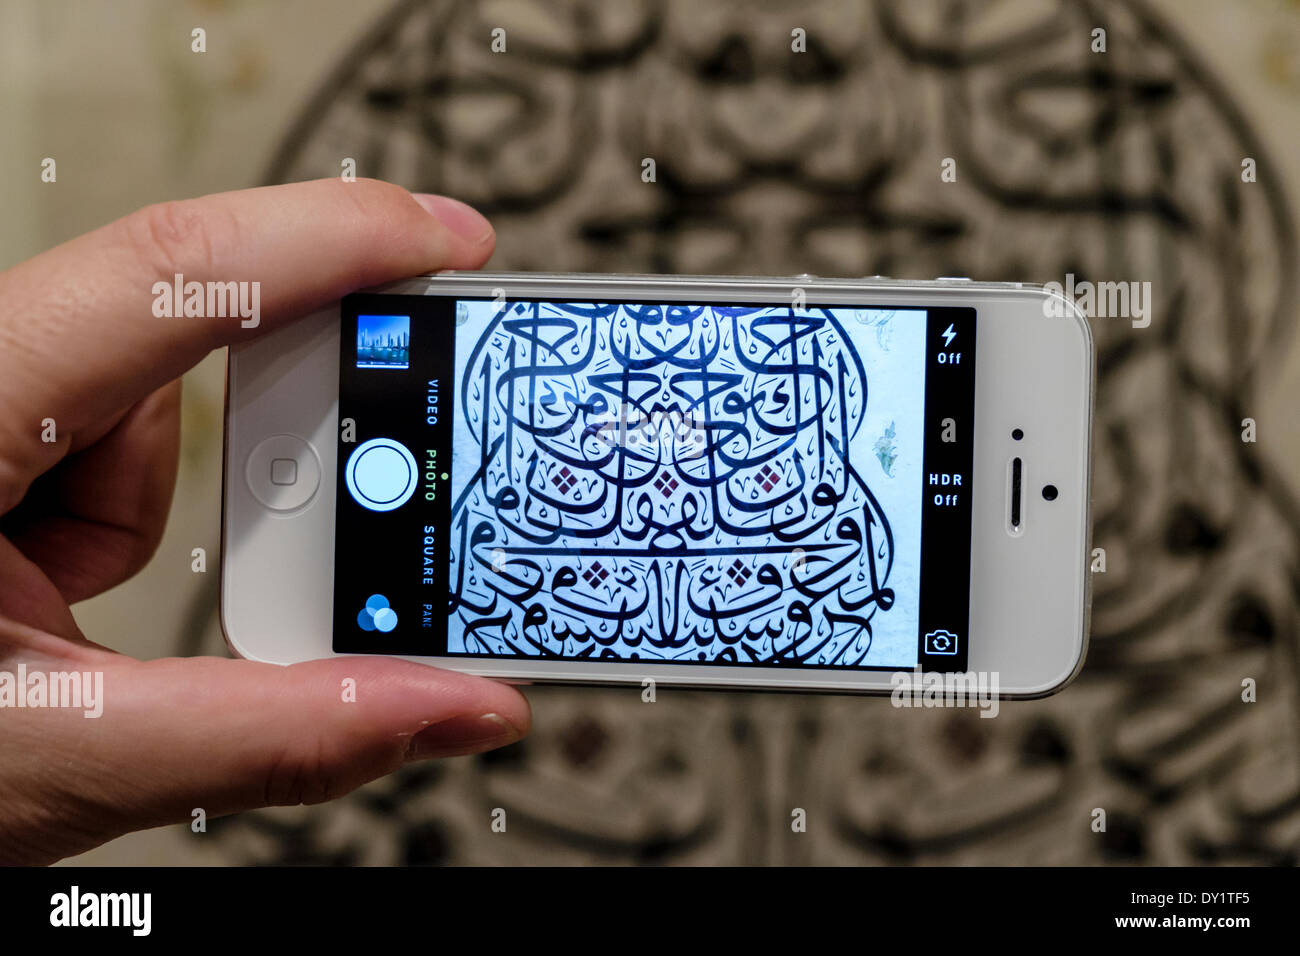 Sharjah, Vereinigte Arabische Emirate. 3. April 2014; Eröffnungstag der Sharjah Biennale Kalligraphie statt im Emirat Sharjah in den Vereinigten Arabischen Emiraten. Bildnachweis: Iain Masterton/Alamy Live-Nachrichten Stockfoto